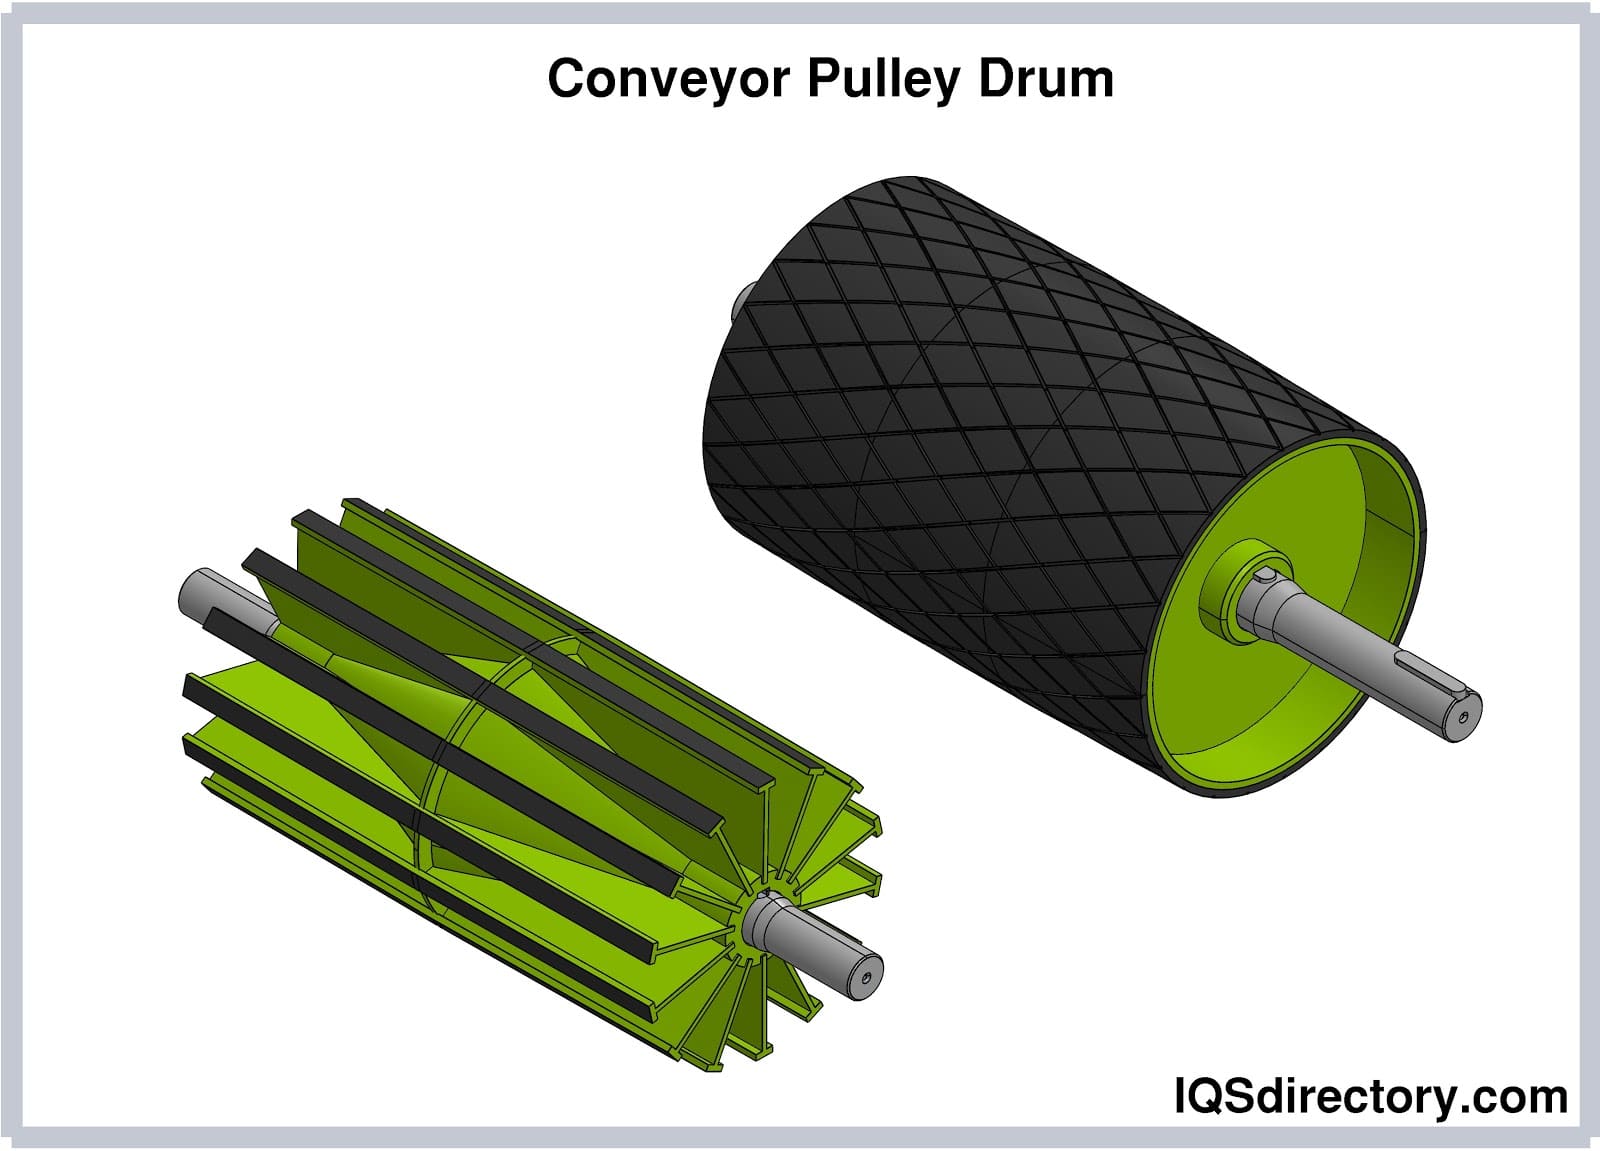 Conveyor Pulley Drum